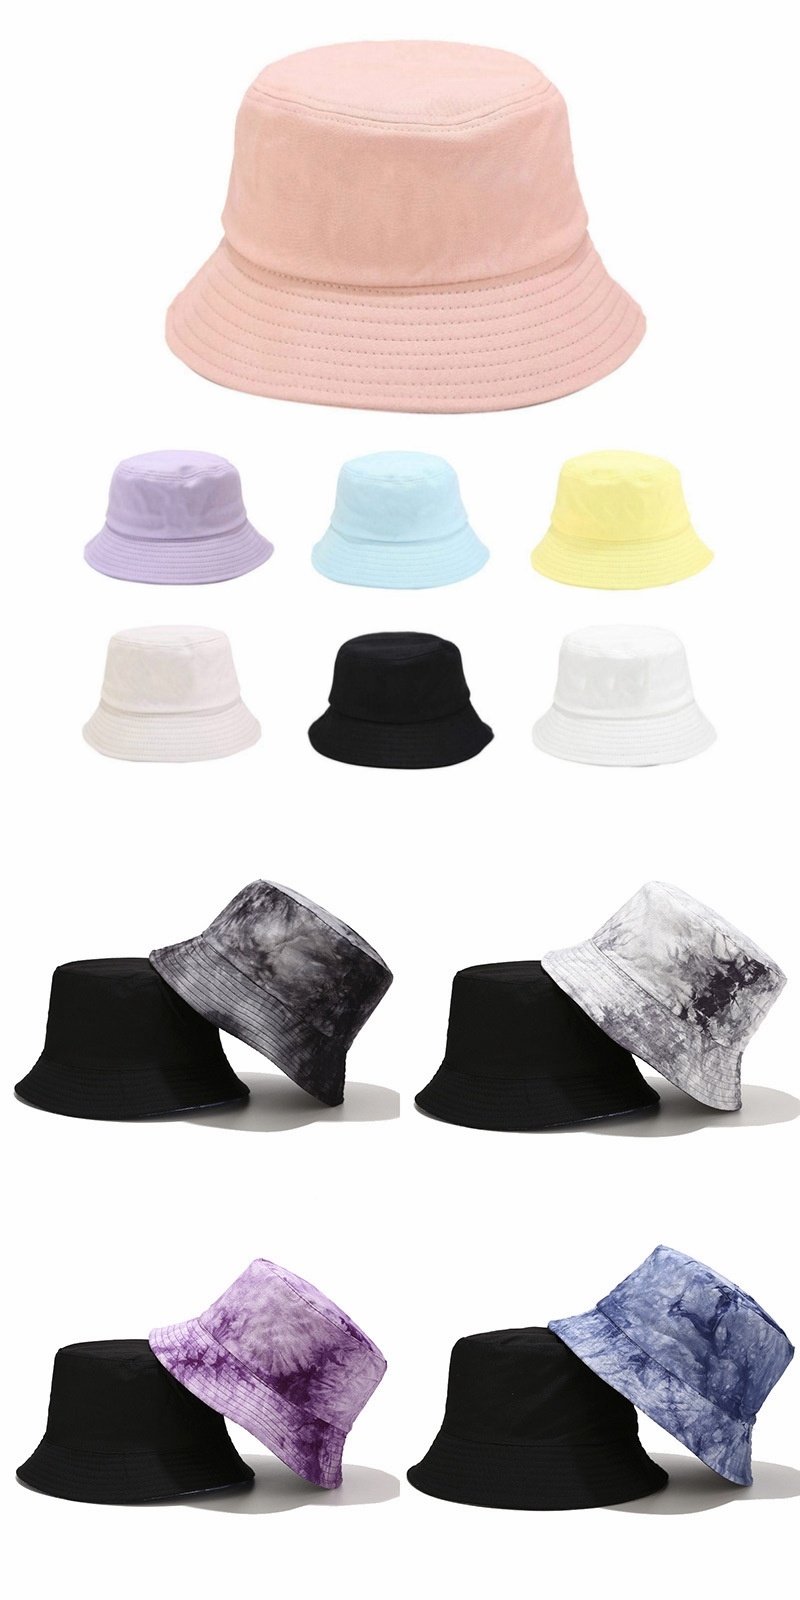 2020 Support Sample Unisex Men Women Cotton Fishing Print Bucket Cap Custom Hat Bucket Hat